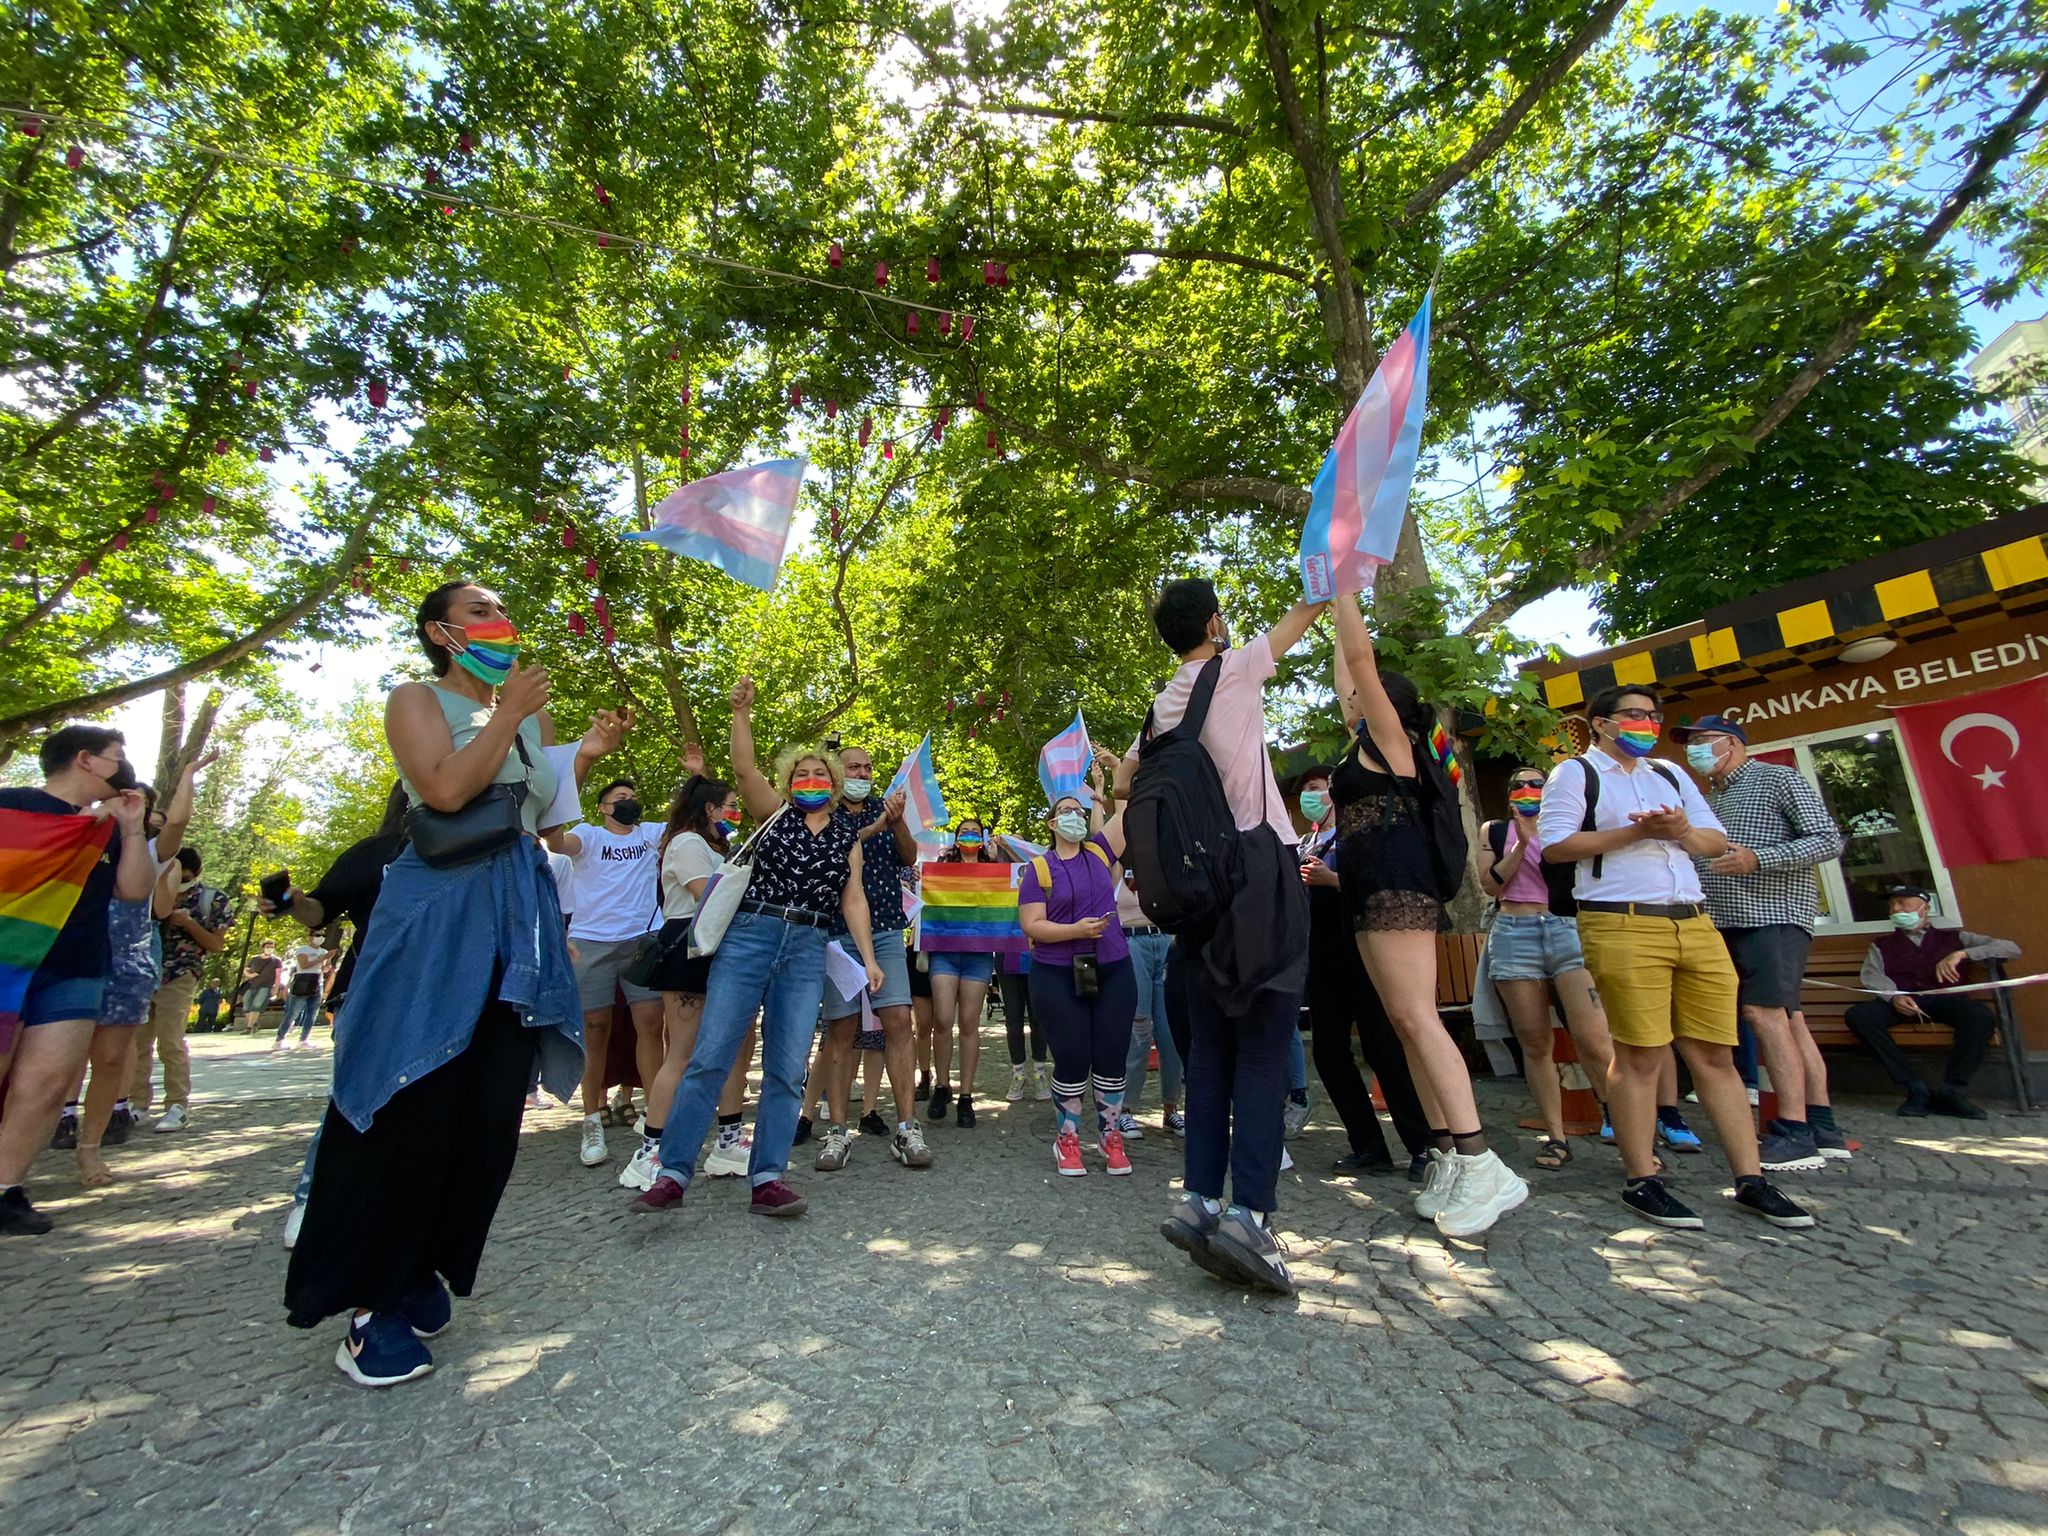 Ankara Onur Yürüyüşü: “Ankara’daki lubunyalar olarak burada varlığımızı kutluyoruz” Kaos GL - LGBTİ+ Haber Portalı